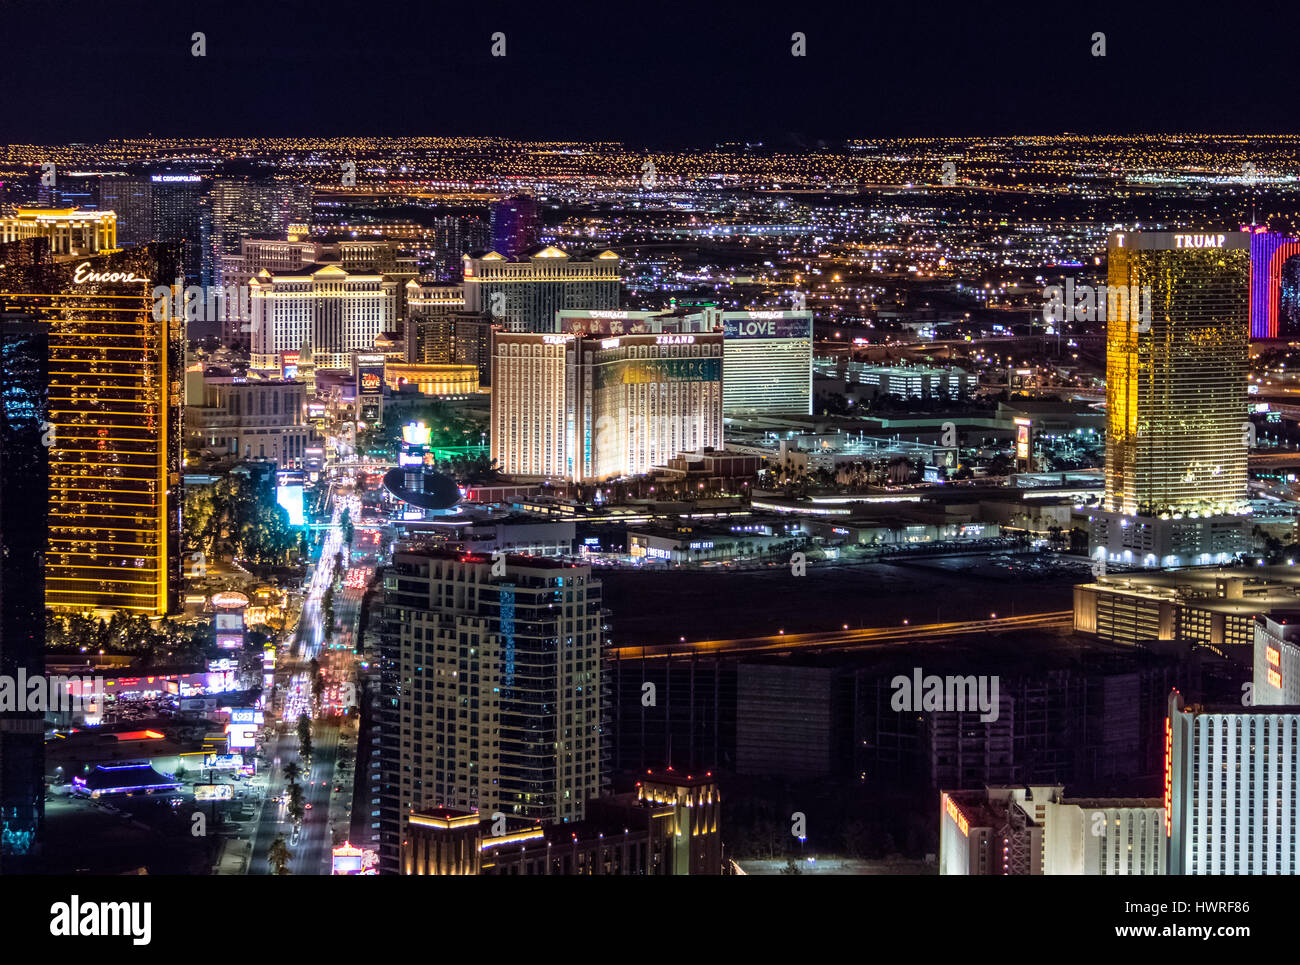 Aerial view of Las Vegas Strip at night - Las Vegas, Nevada, USA Stock Photo